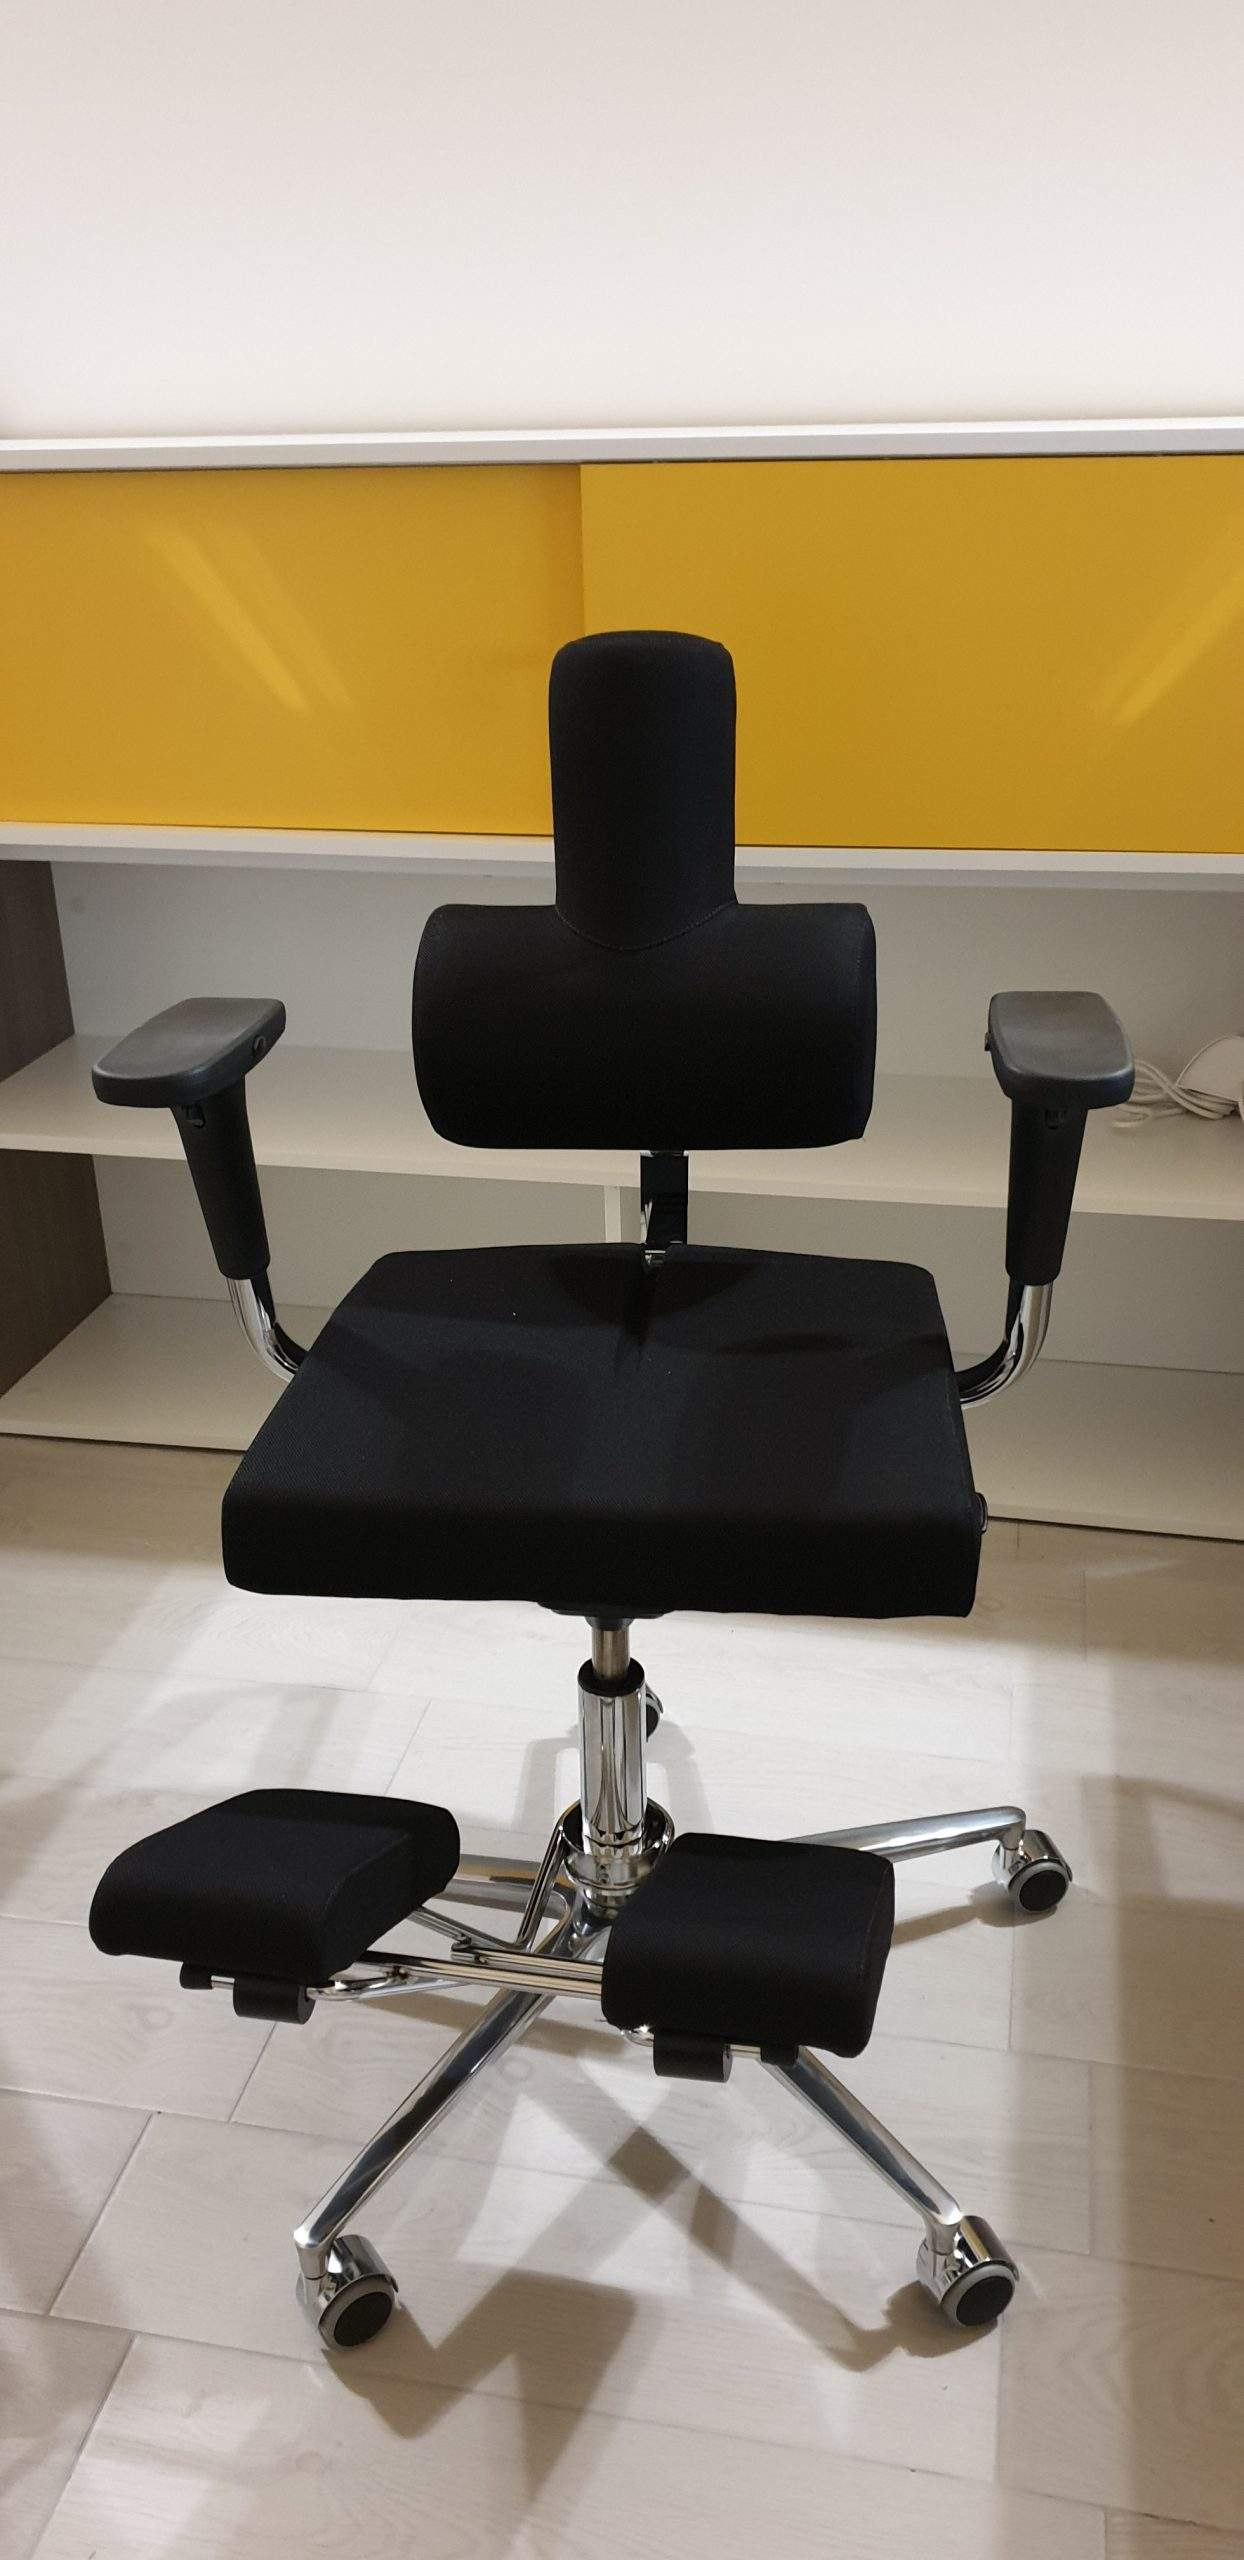 Le Migliore sedia ergonomica da Ufficio: KomfortChair